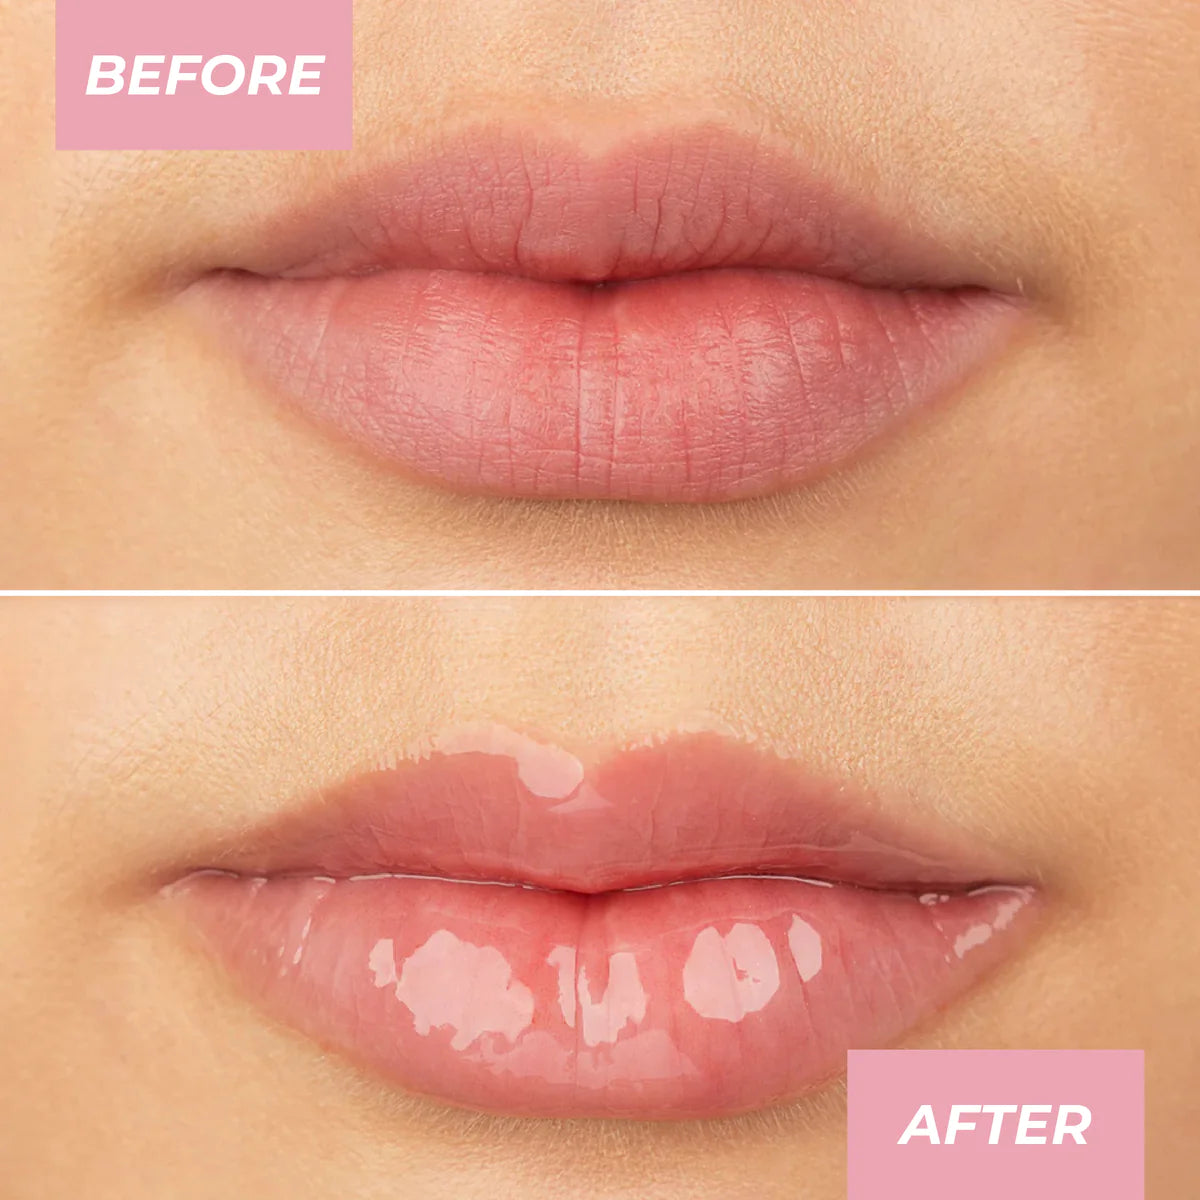 MCOBEAUTY Glow & Treat 2-in-1 Lip Treatment - Berry